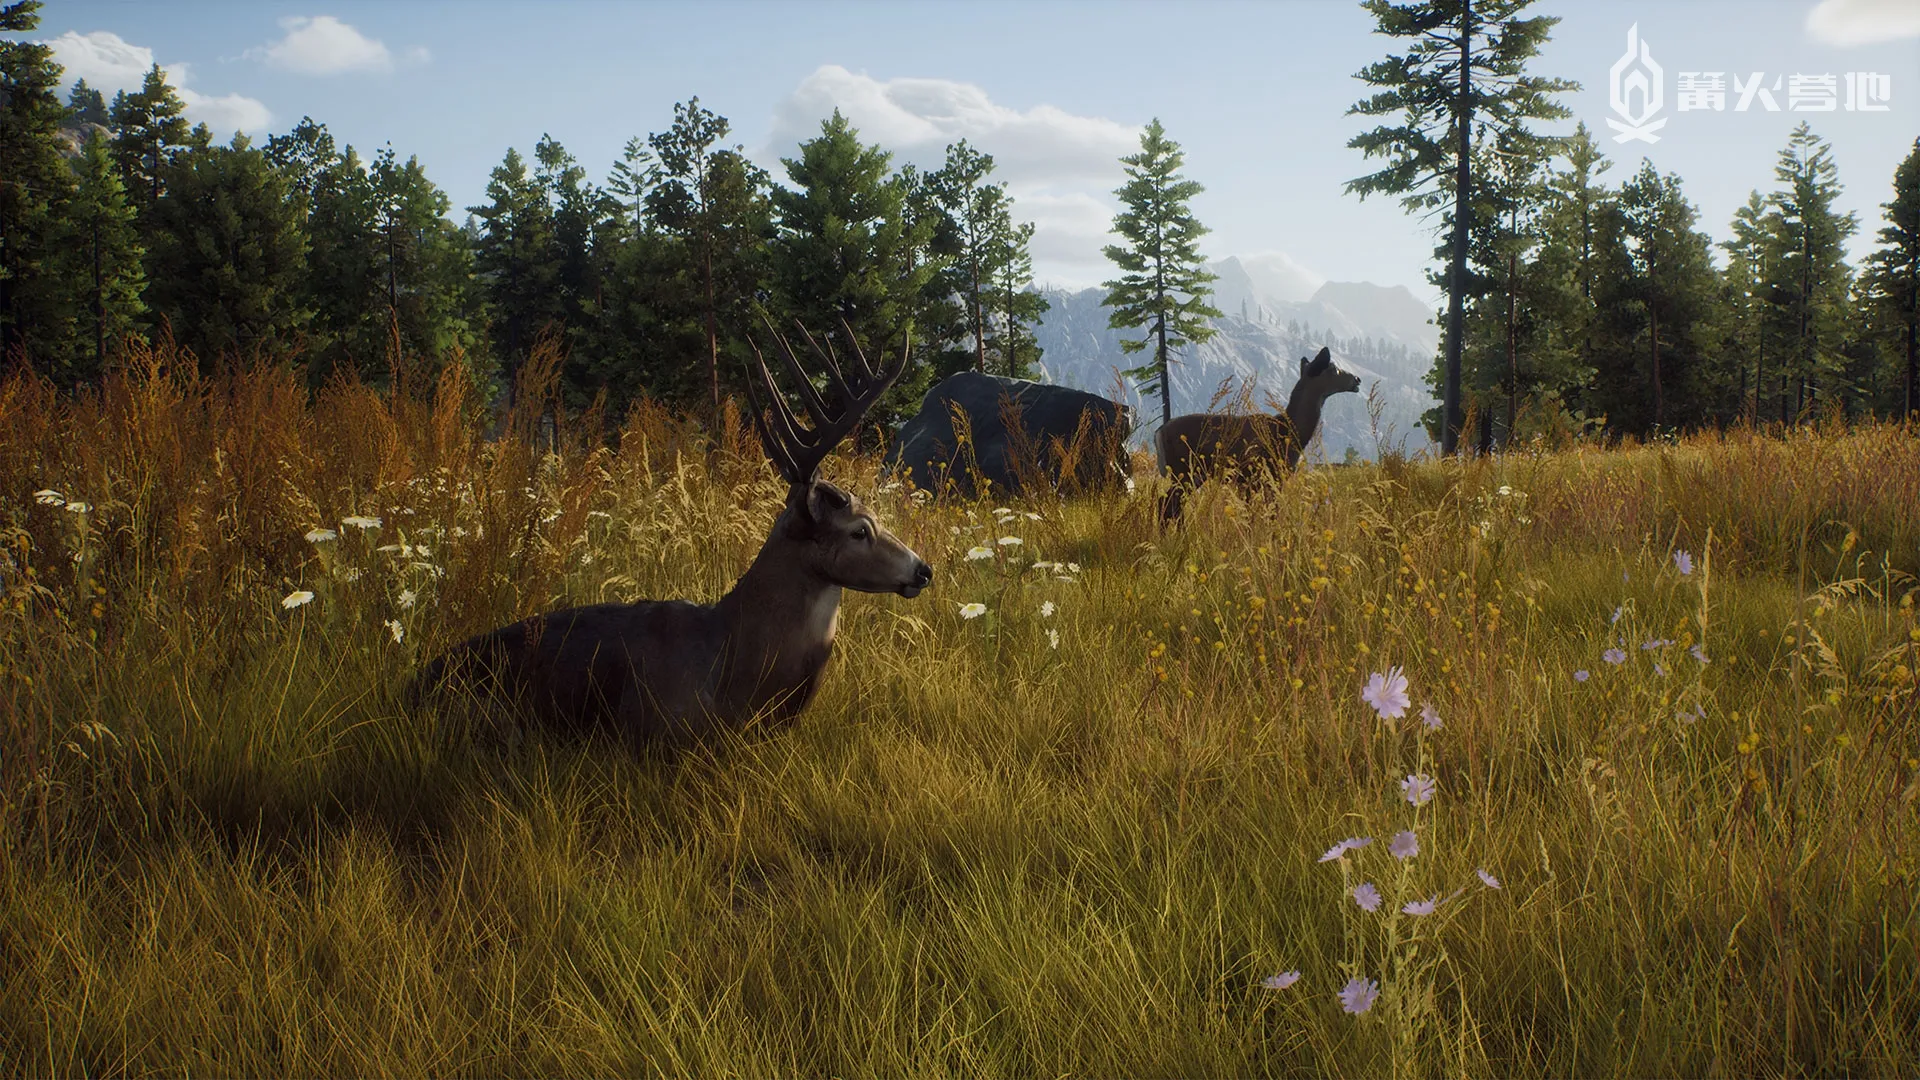 開放世界狩獵遊戲《獵人之路》8 月登陸 PS5/SXS/Steam